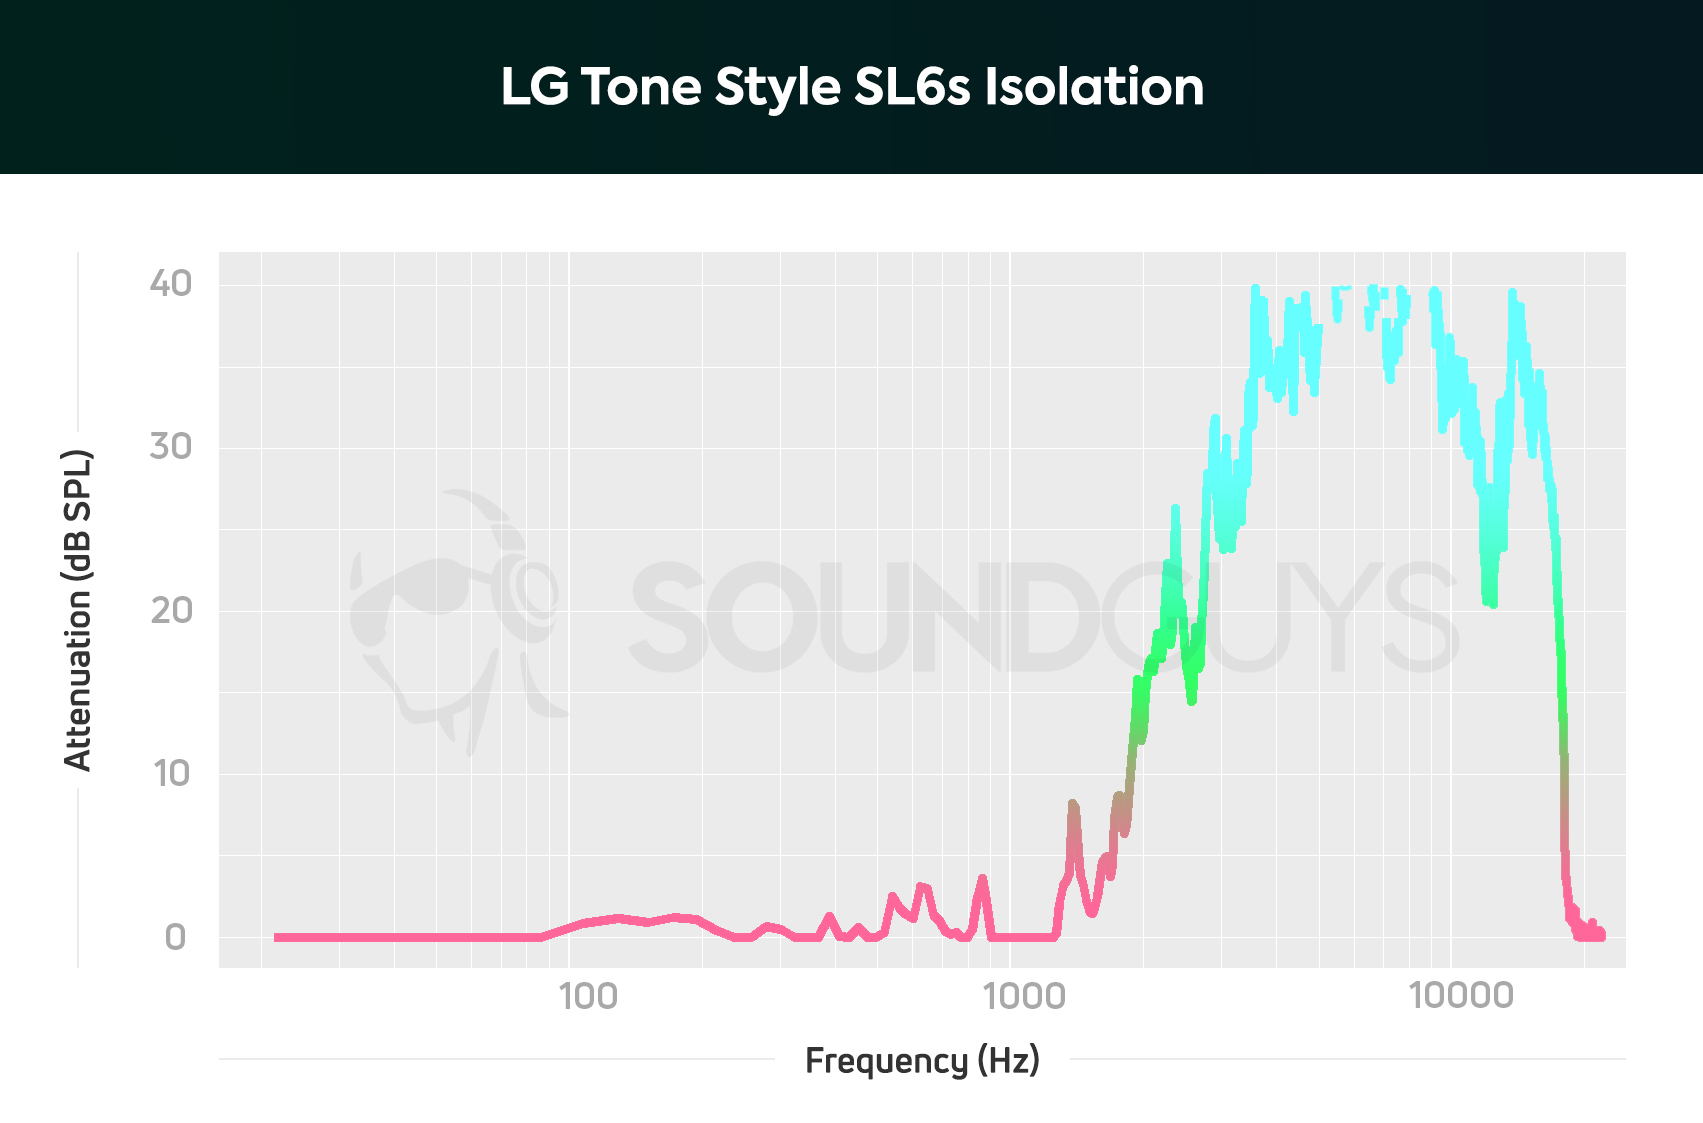 LG Tone Style SL6s isolation chart.